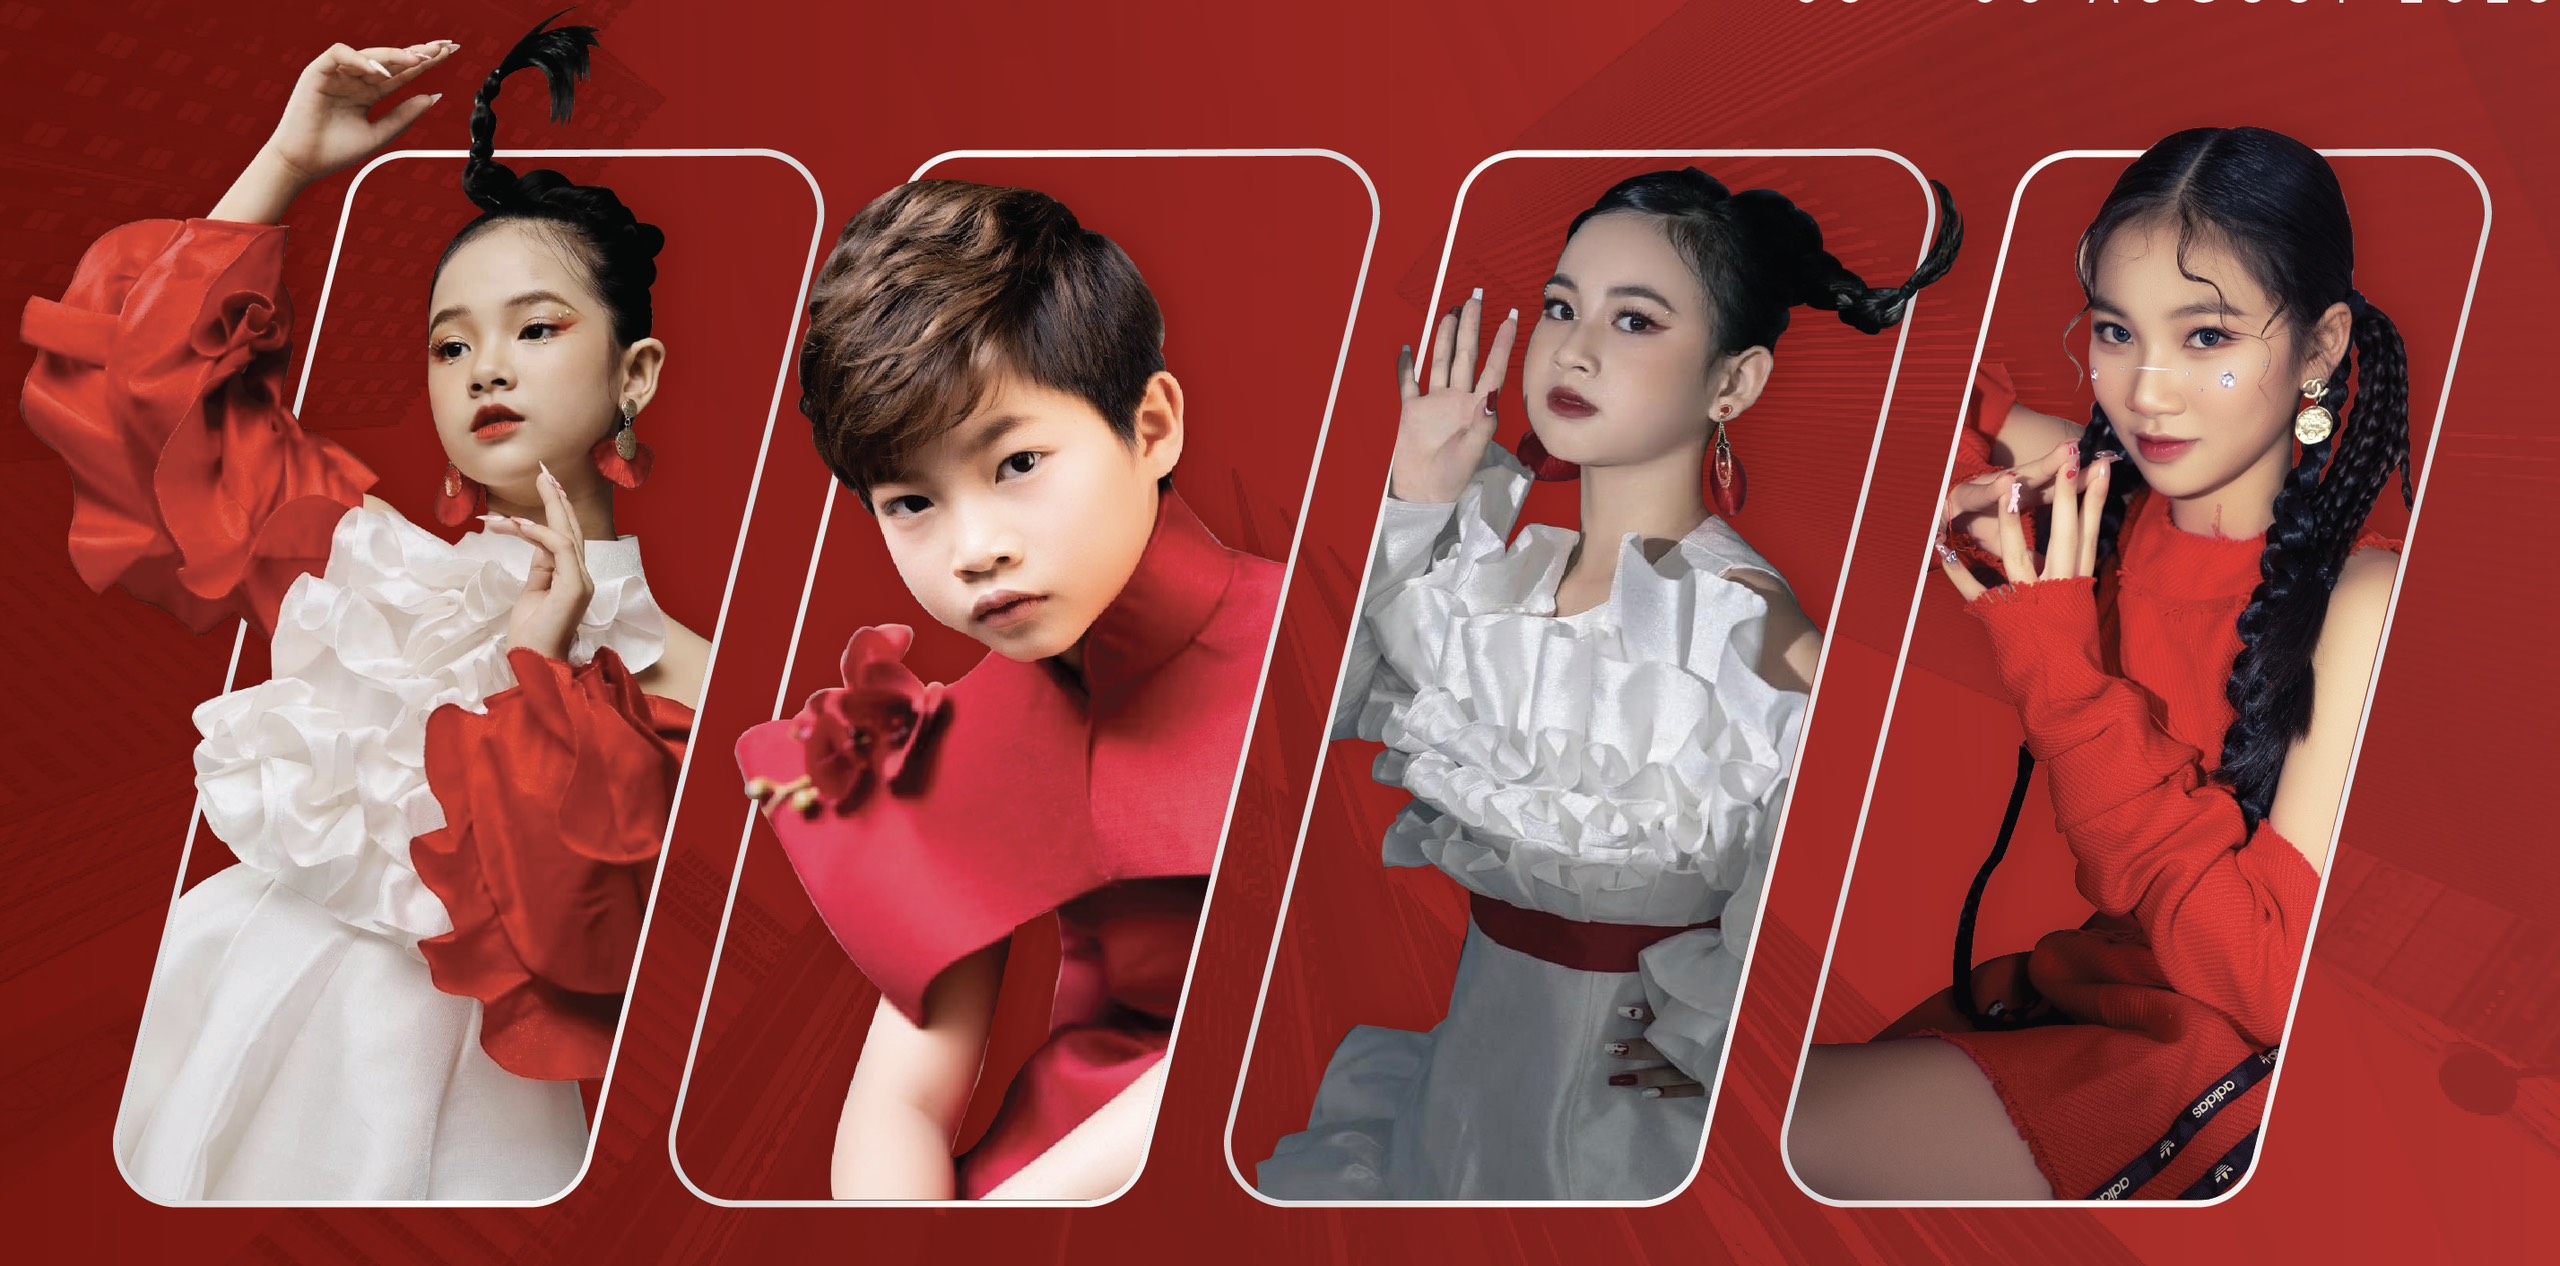 4 media representatives for Vietnam International Junior Fashion Week